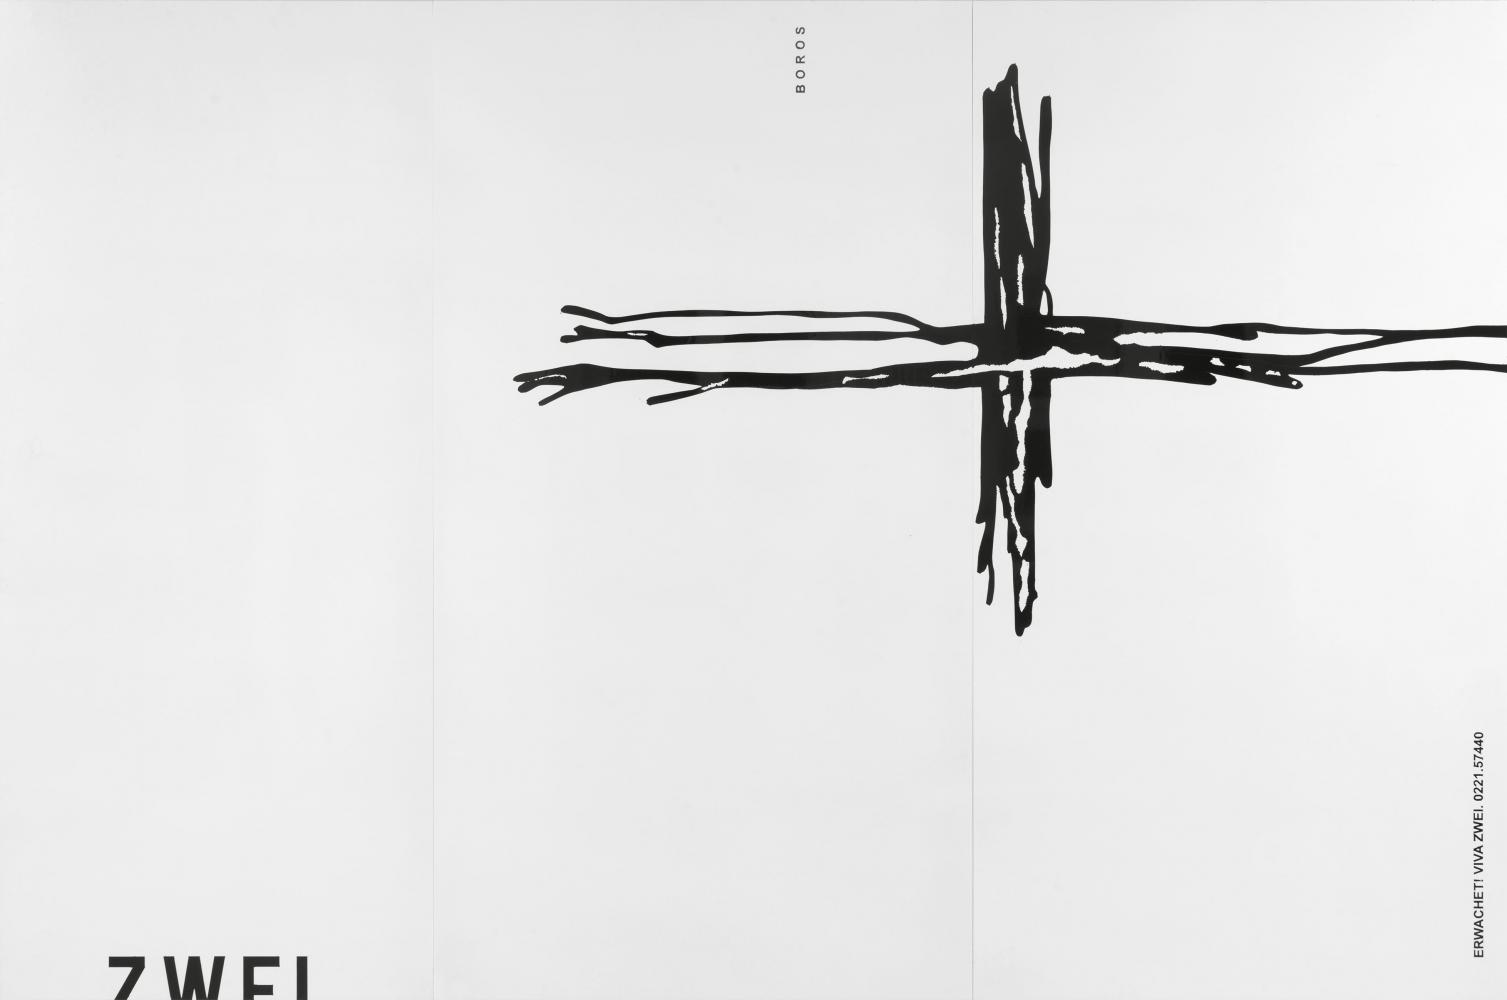 Michel Majerus "Erwachet!", 1999, Lack auf Aluminium, 277 x 420 x 1,7 cm